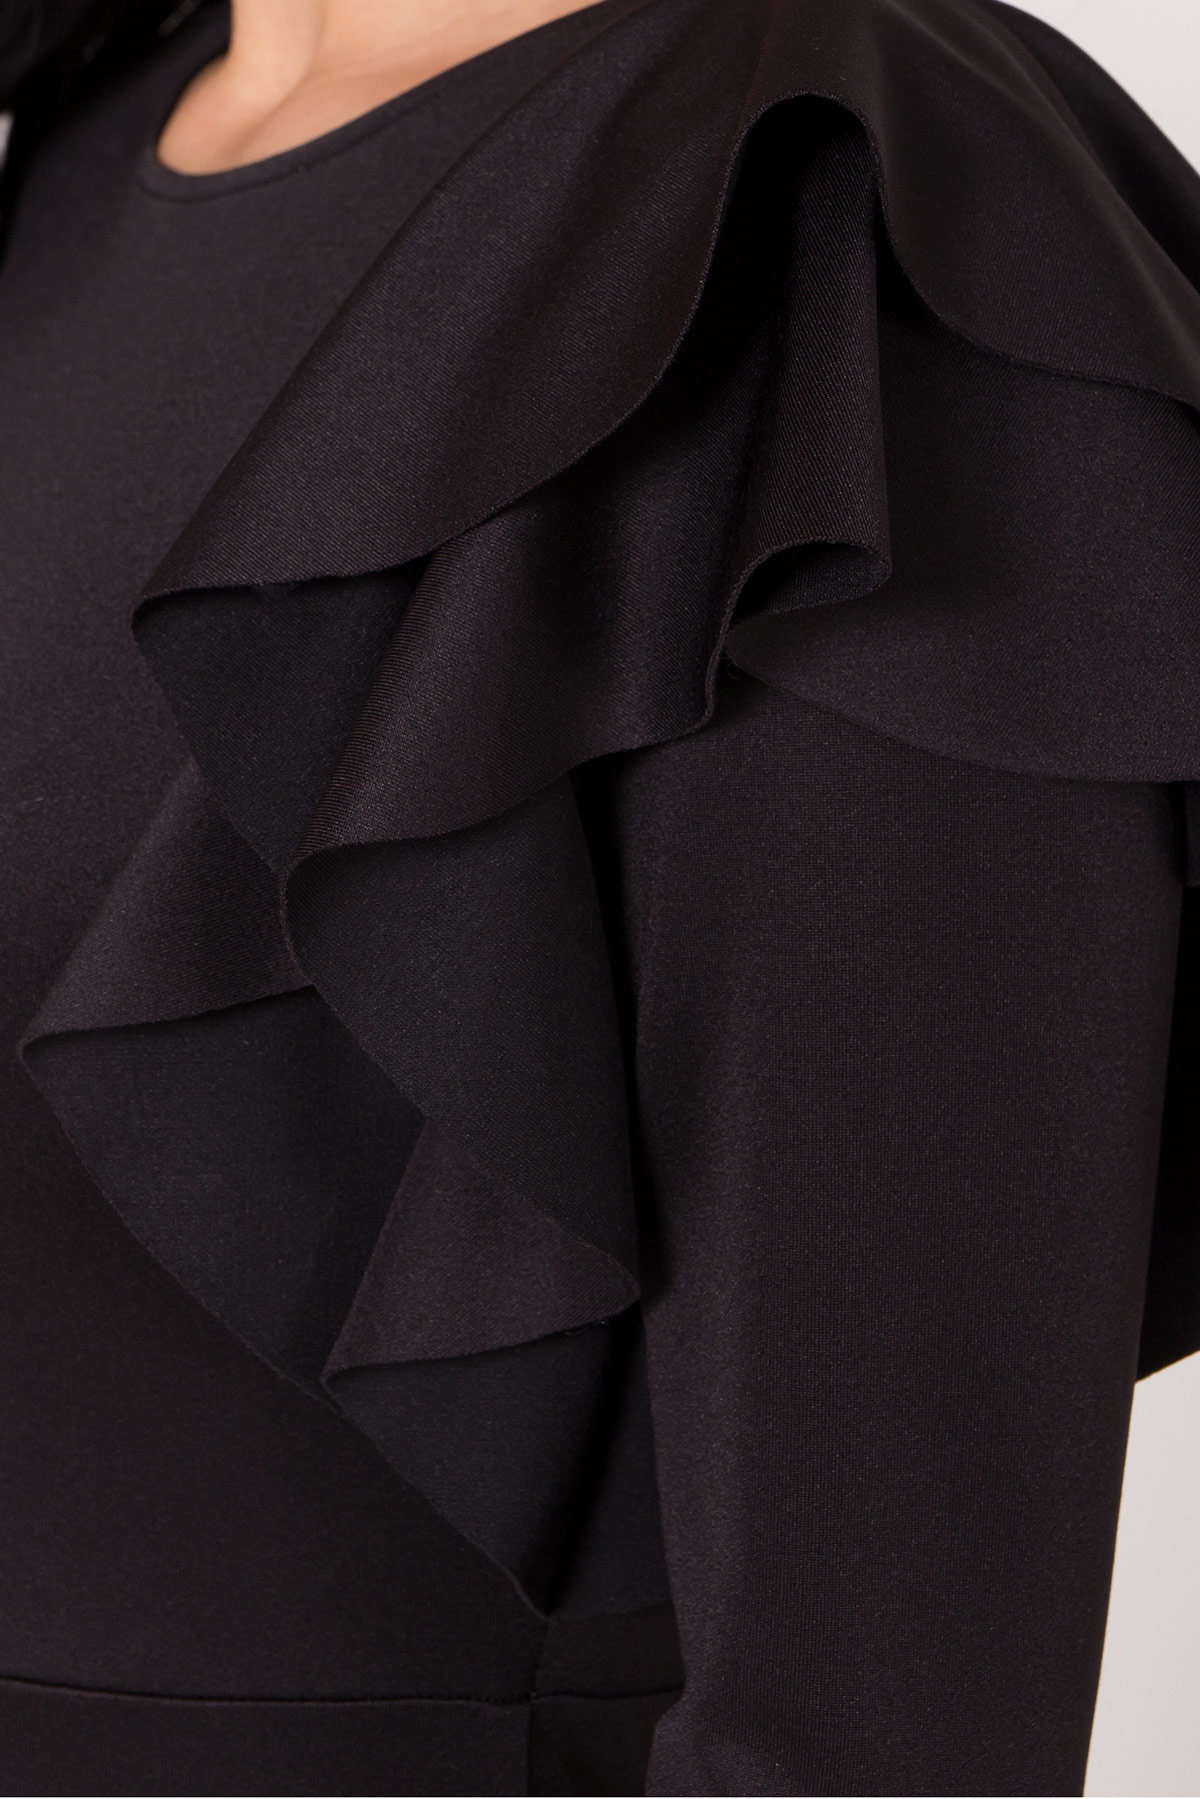 Платье Оникс 8367 Цвет: Черный